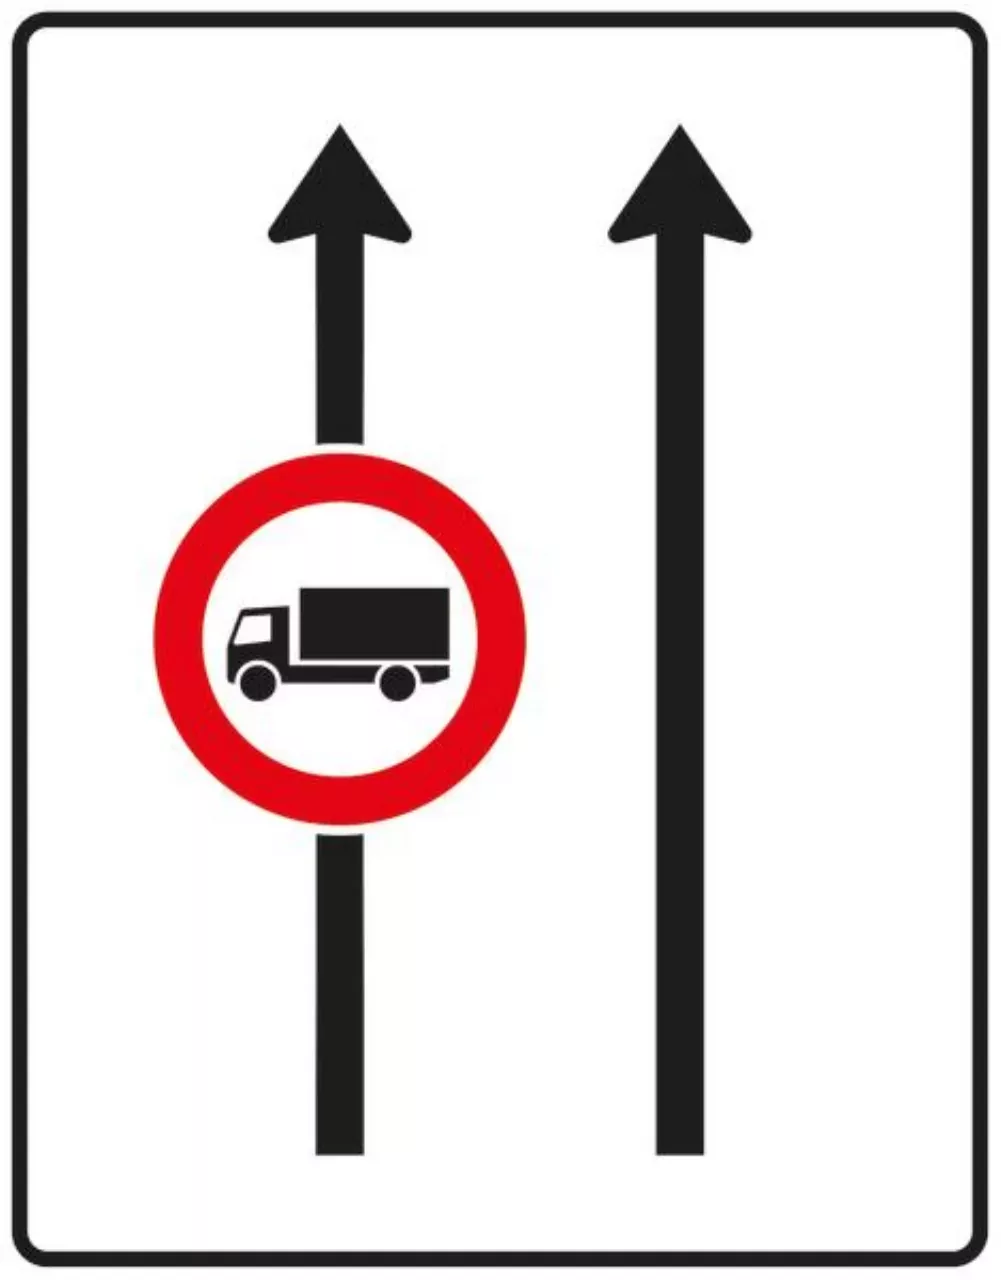 Verkehrszeichen 524-30 Fahrstreifentafel - ohne Gegenverkehr mit integriertem Zeichen 253 - zweistreifig in Fahrtrichtung; neues Zeichen - 1600x1250 Alform RA2